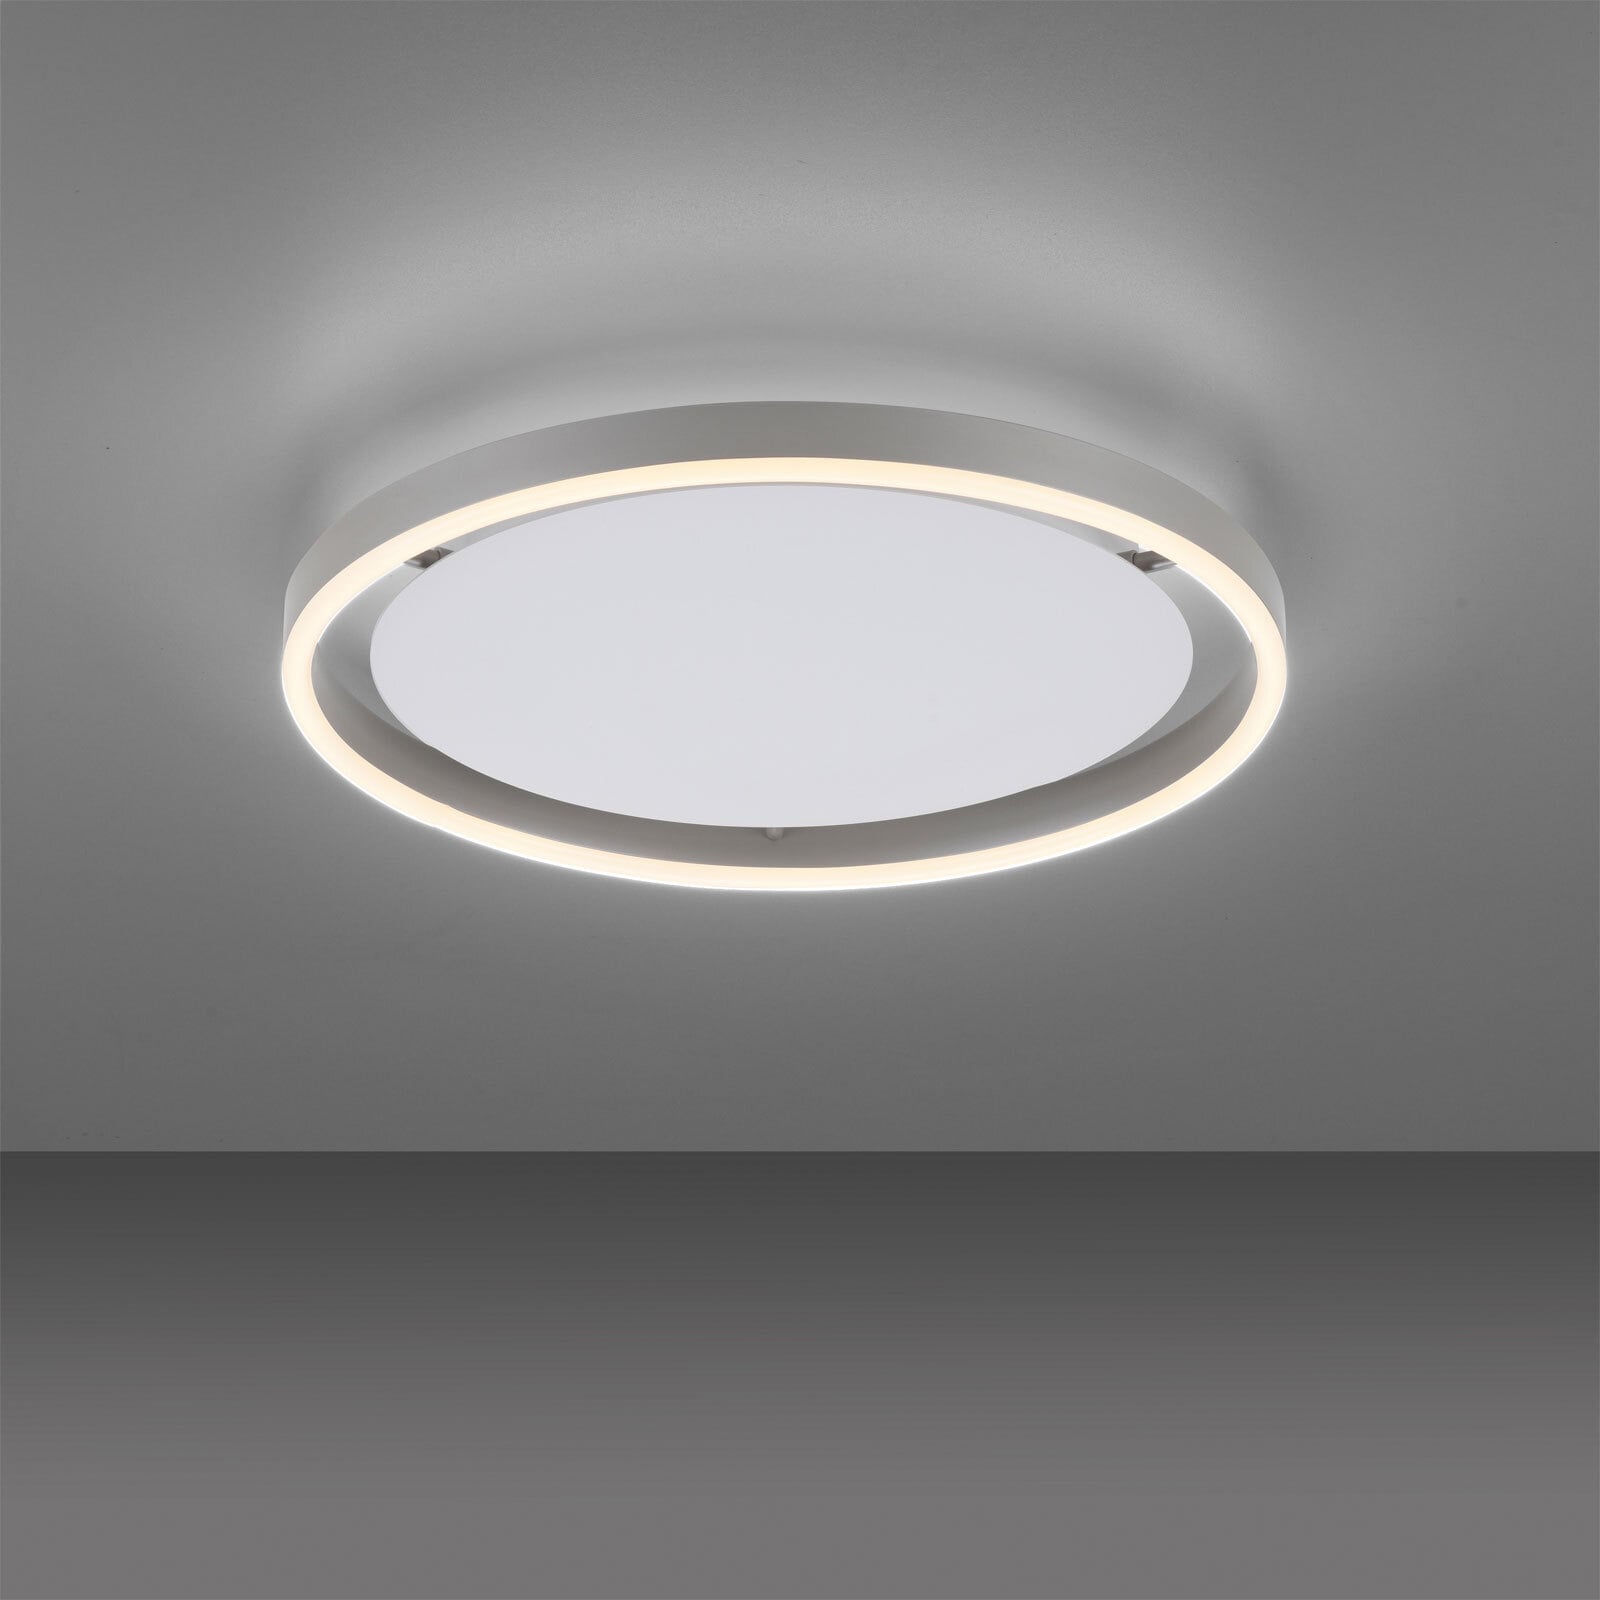 JUST LIGHT LED Deckenlampe RITUS 39 cm alufarbig